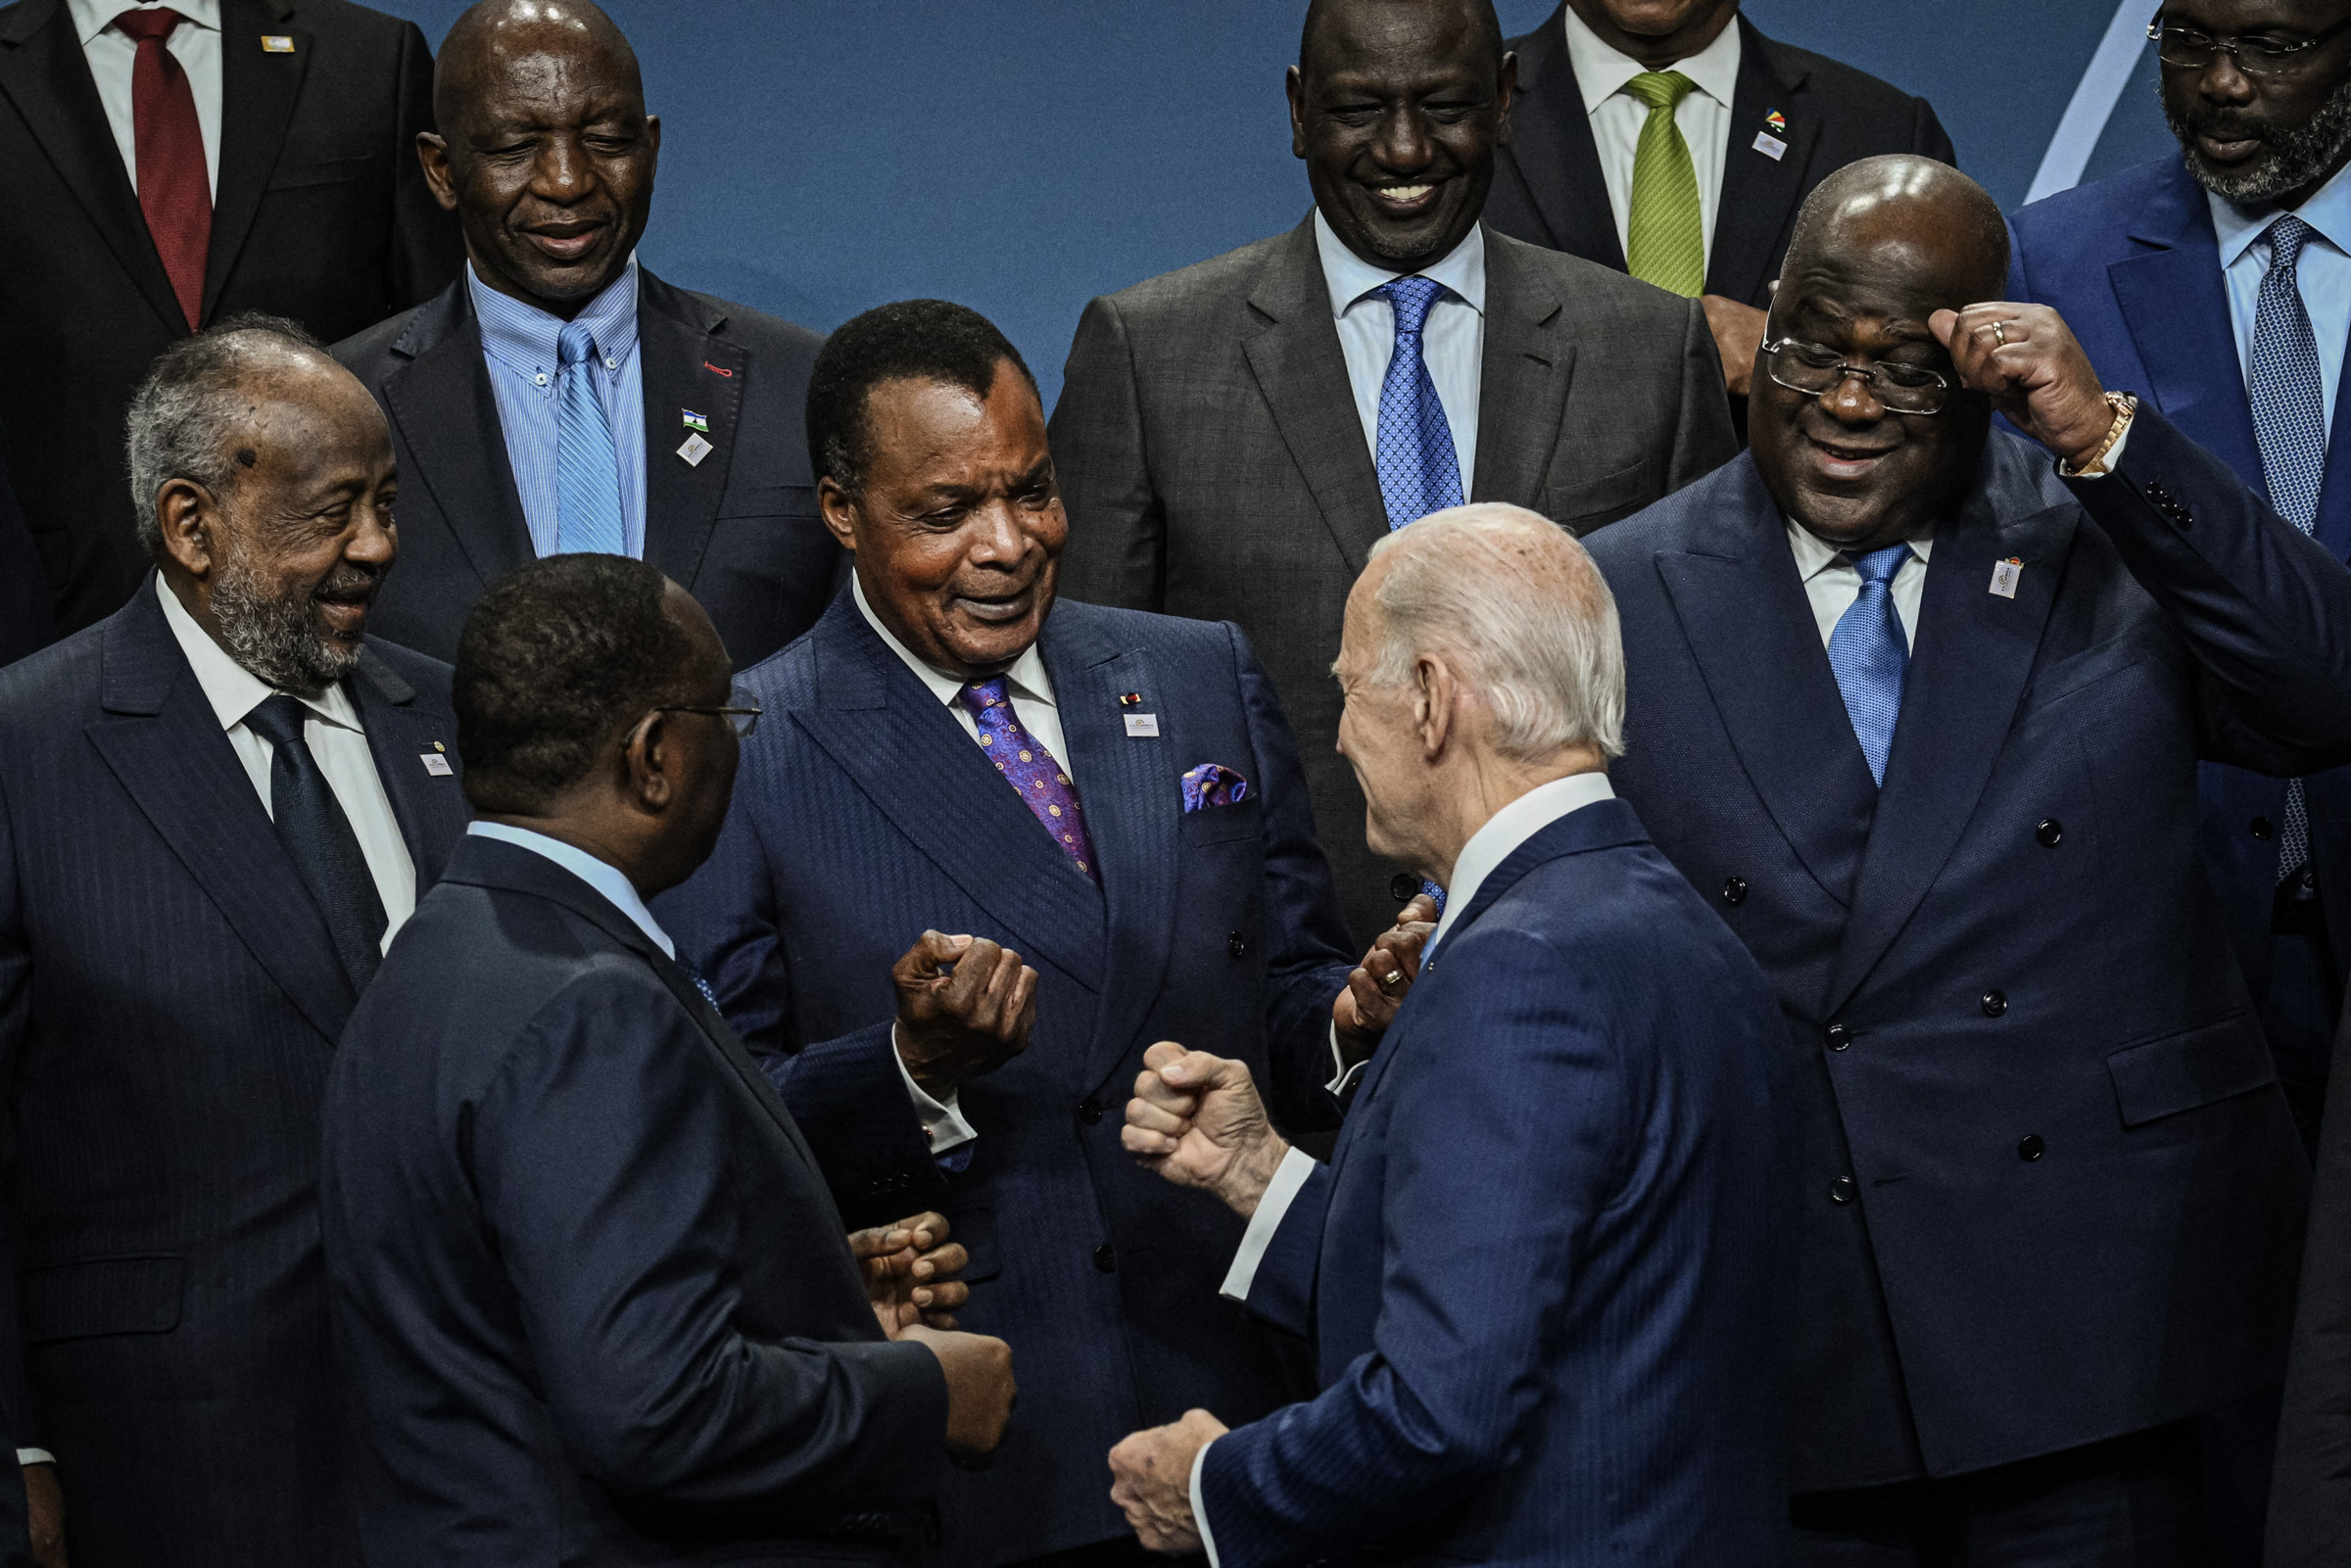 Tổng thống Joe Biden trong một bức ảnh với các nhà lãnh đạo của Hội nghị thượng đỉnh Các nhà lãnh đạo Hoa Kỳ-Châu Phi ở Hoa Thịnh Đốn, vào ngày 15/12/2022. (Ảnh: Brendan Smialowski/AFP qua Getty Images)